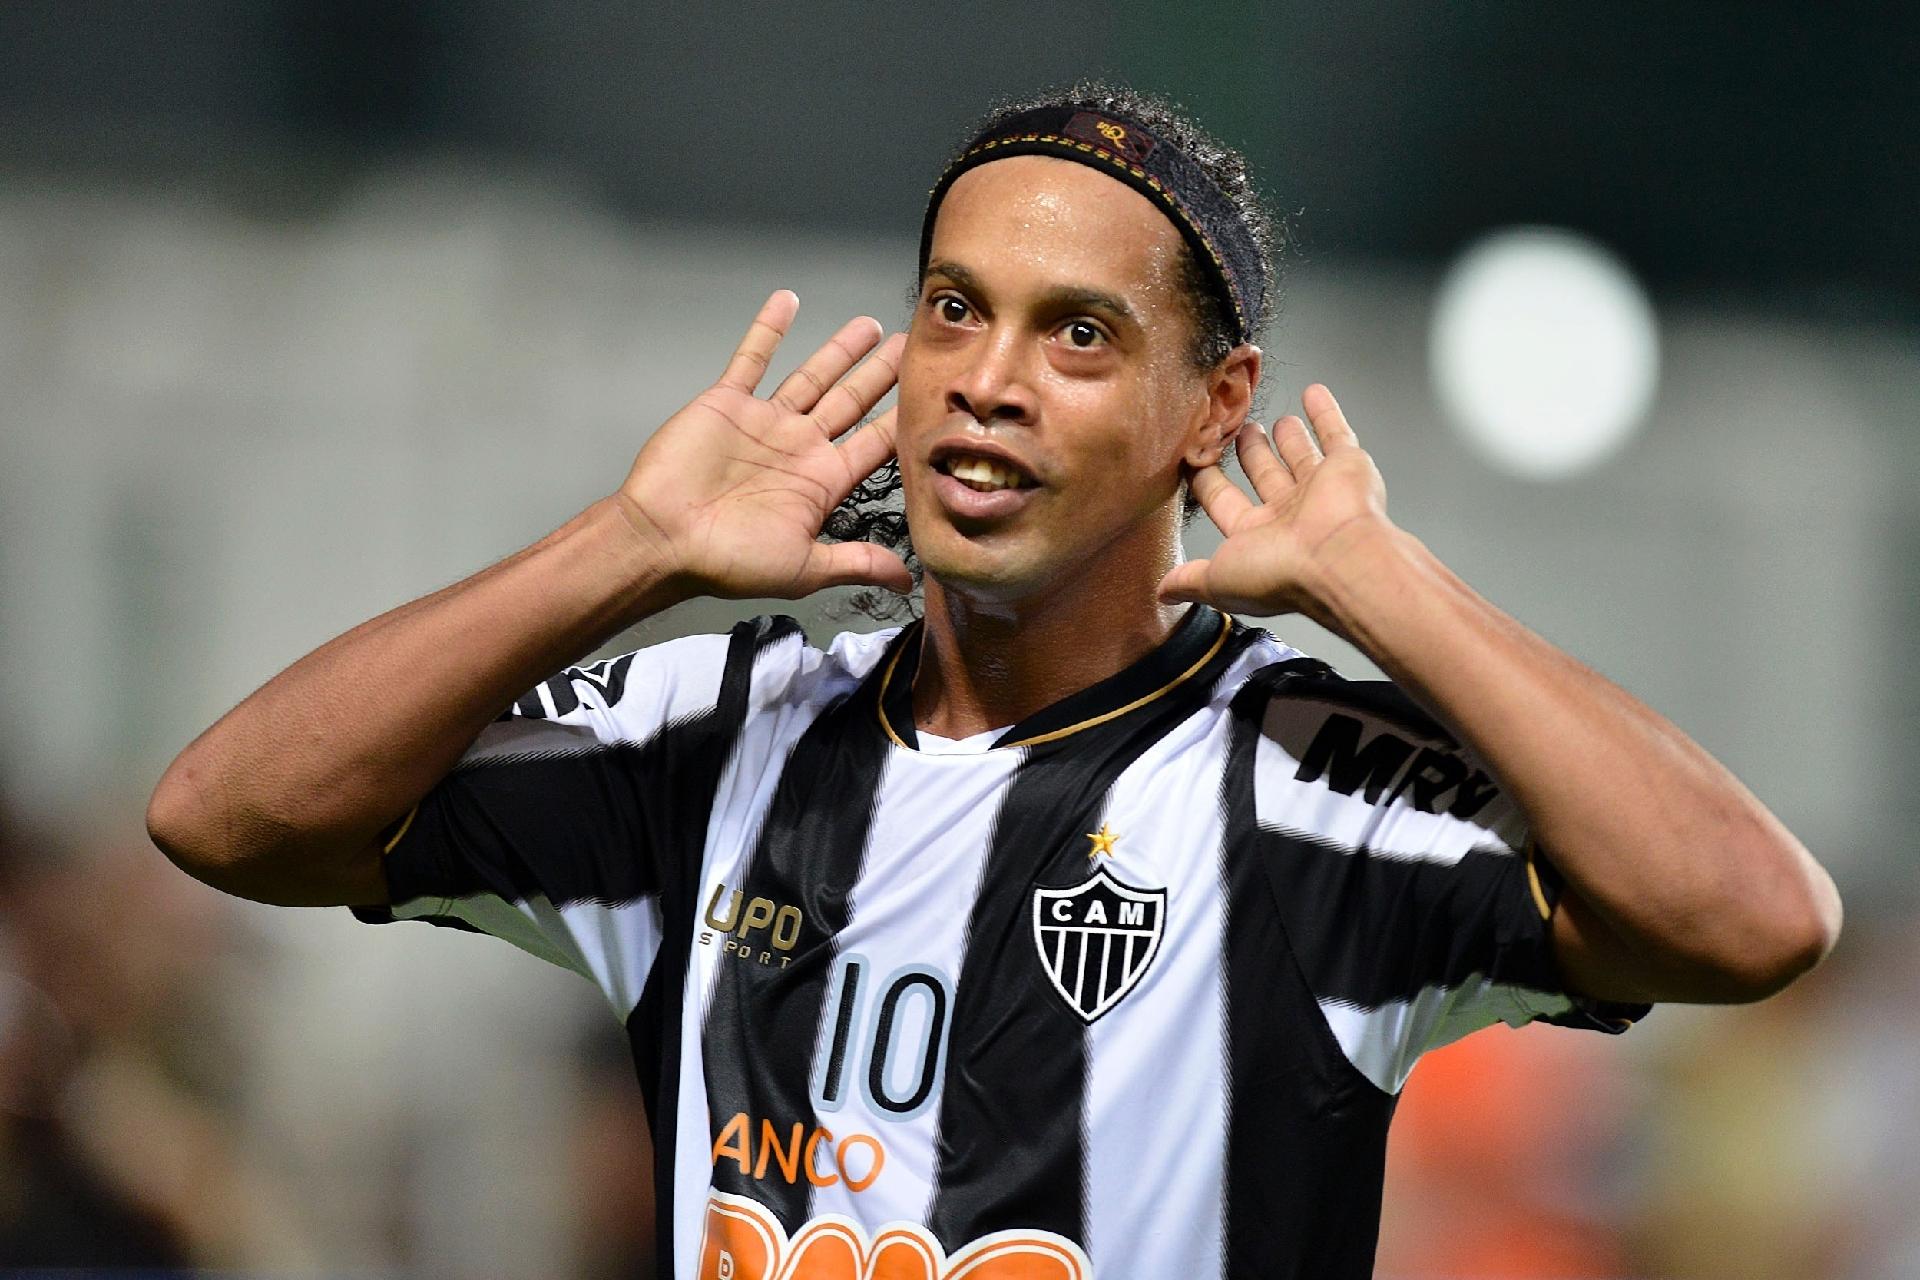 Ídolo do futebol brasileiro, Ronaldinho Gaúcho surpreende a todos e assina para vestir a camisa do Atlético Mineiro em mais uma oportunidade